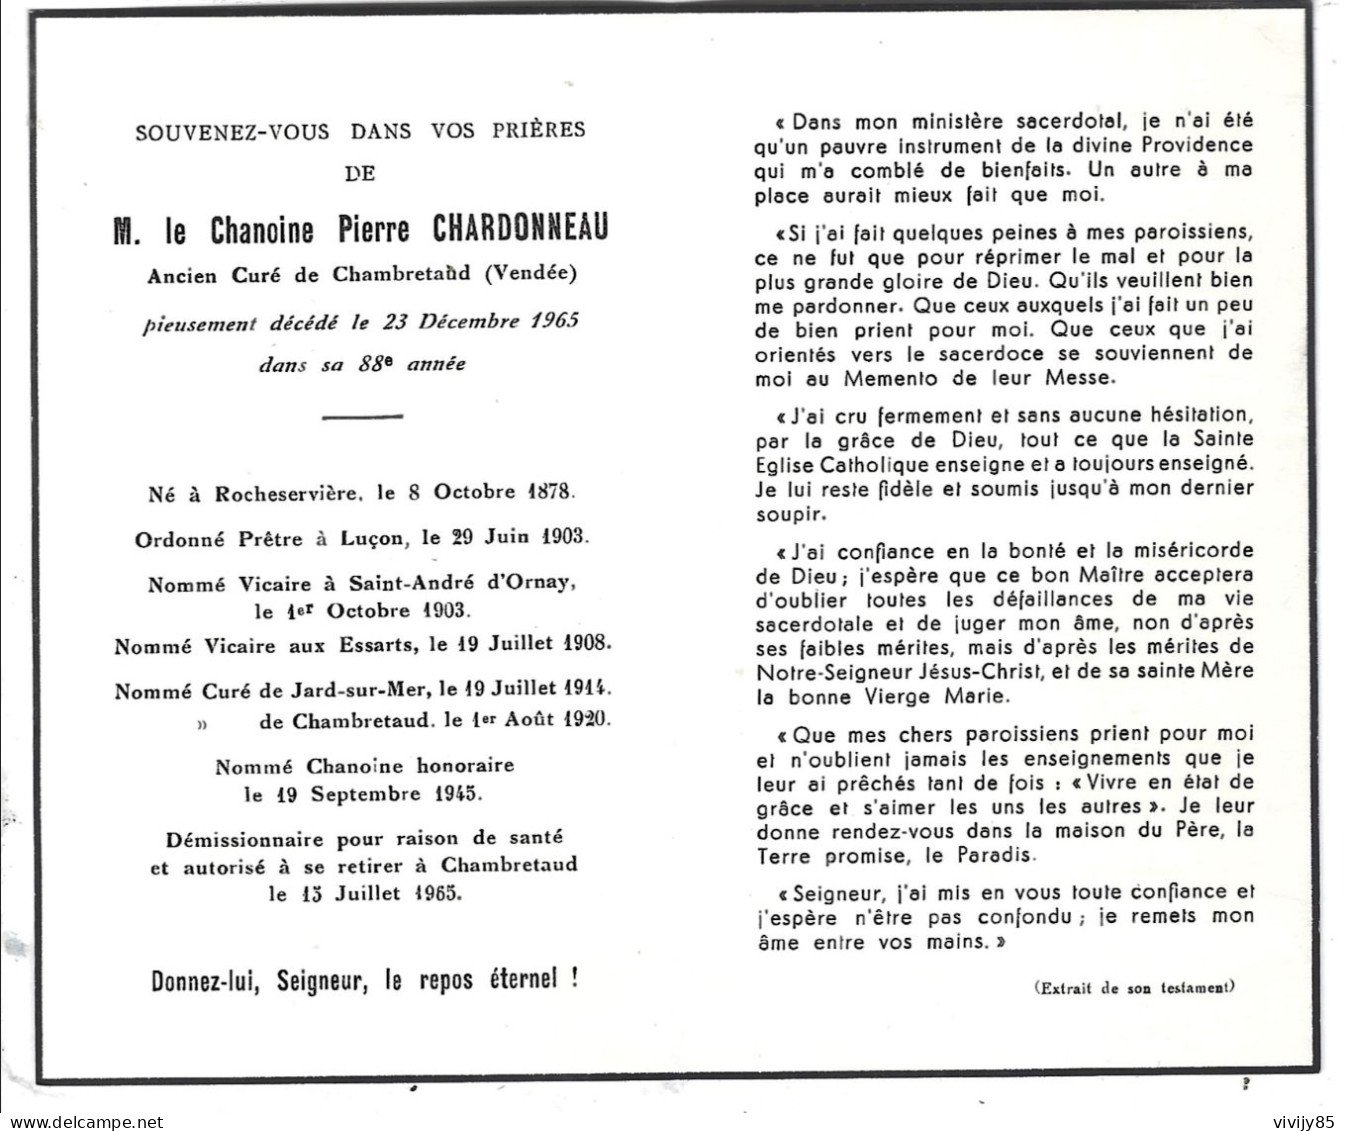 85-CHAMBRFETAUD- Faire Part Décès Chanoine Pierre CHARDONNEAU - ROCHESERVIERE-LUçON-ESSATS-JARD/MER-St A.D'ORNAY - Obituary Notices